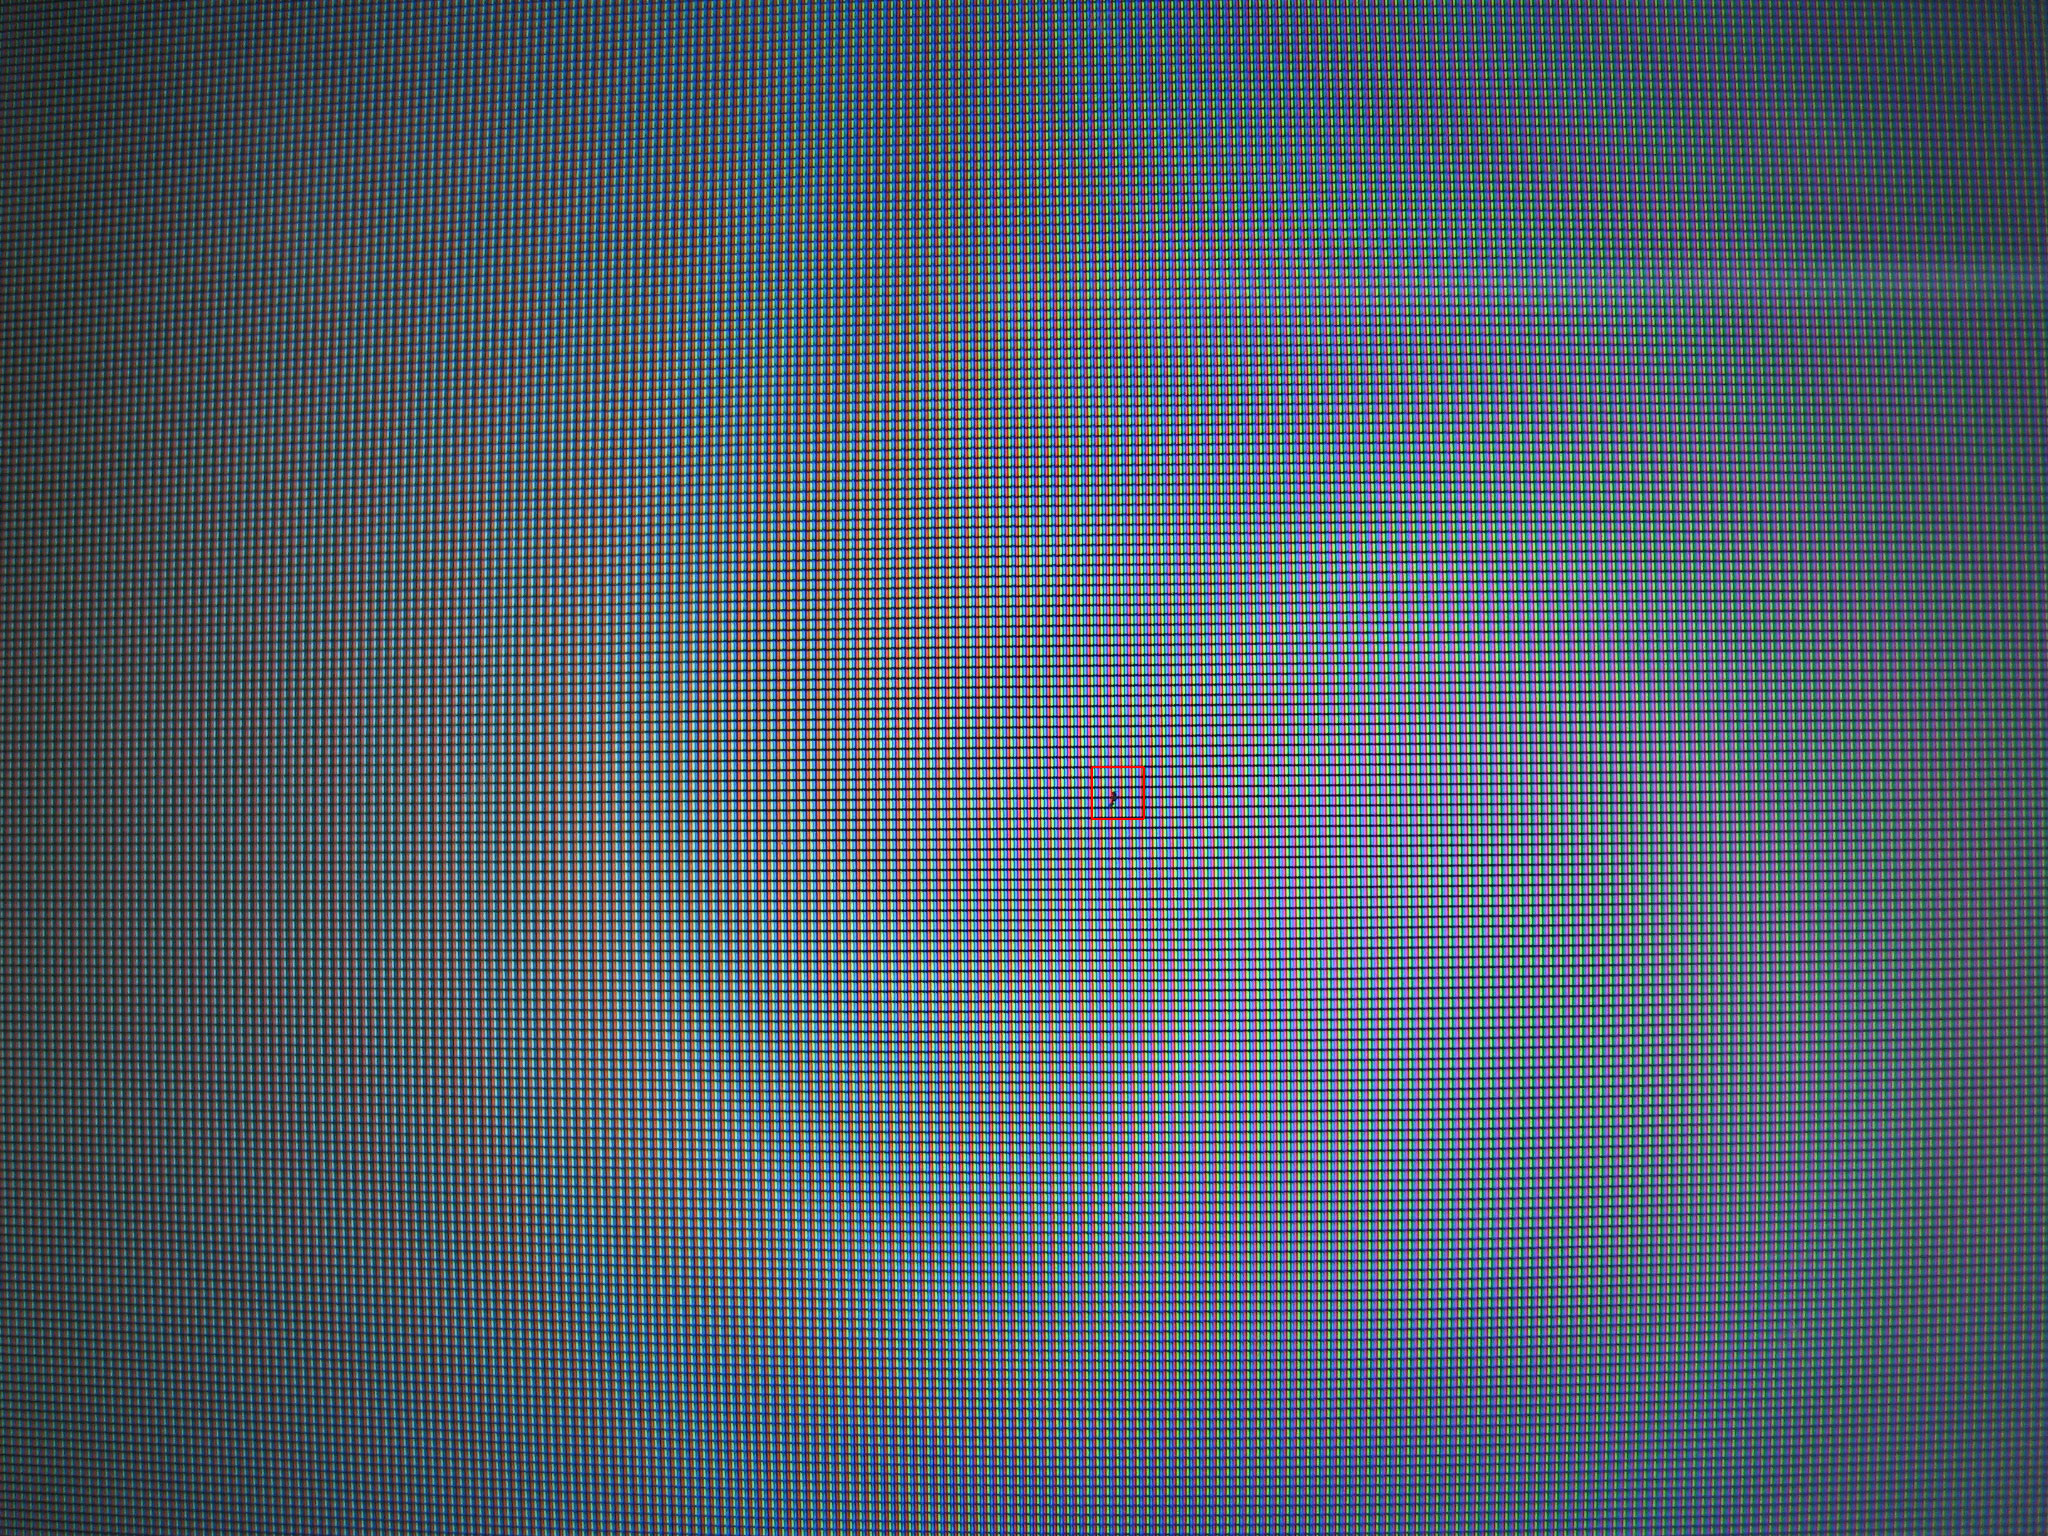 macbook dead pixel